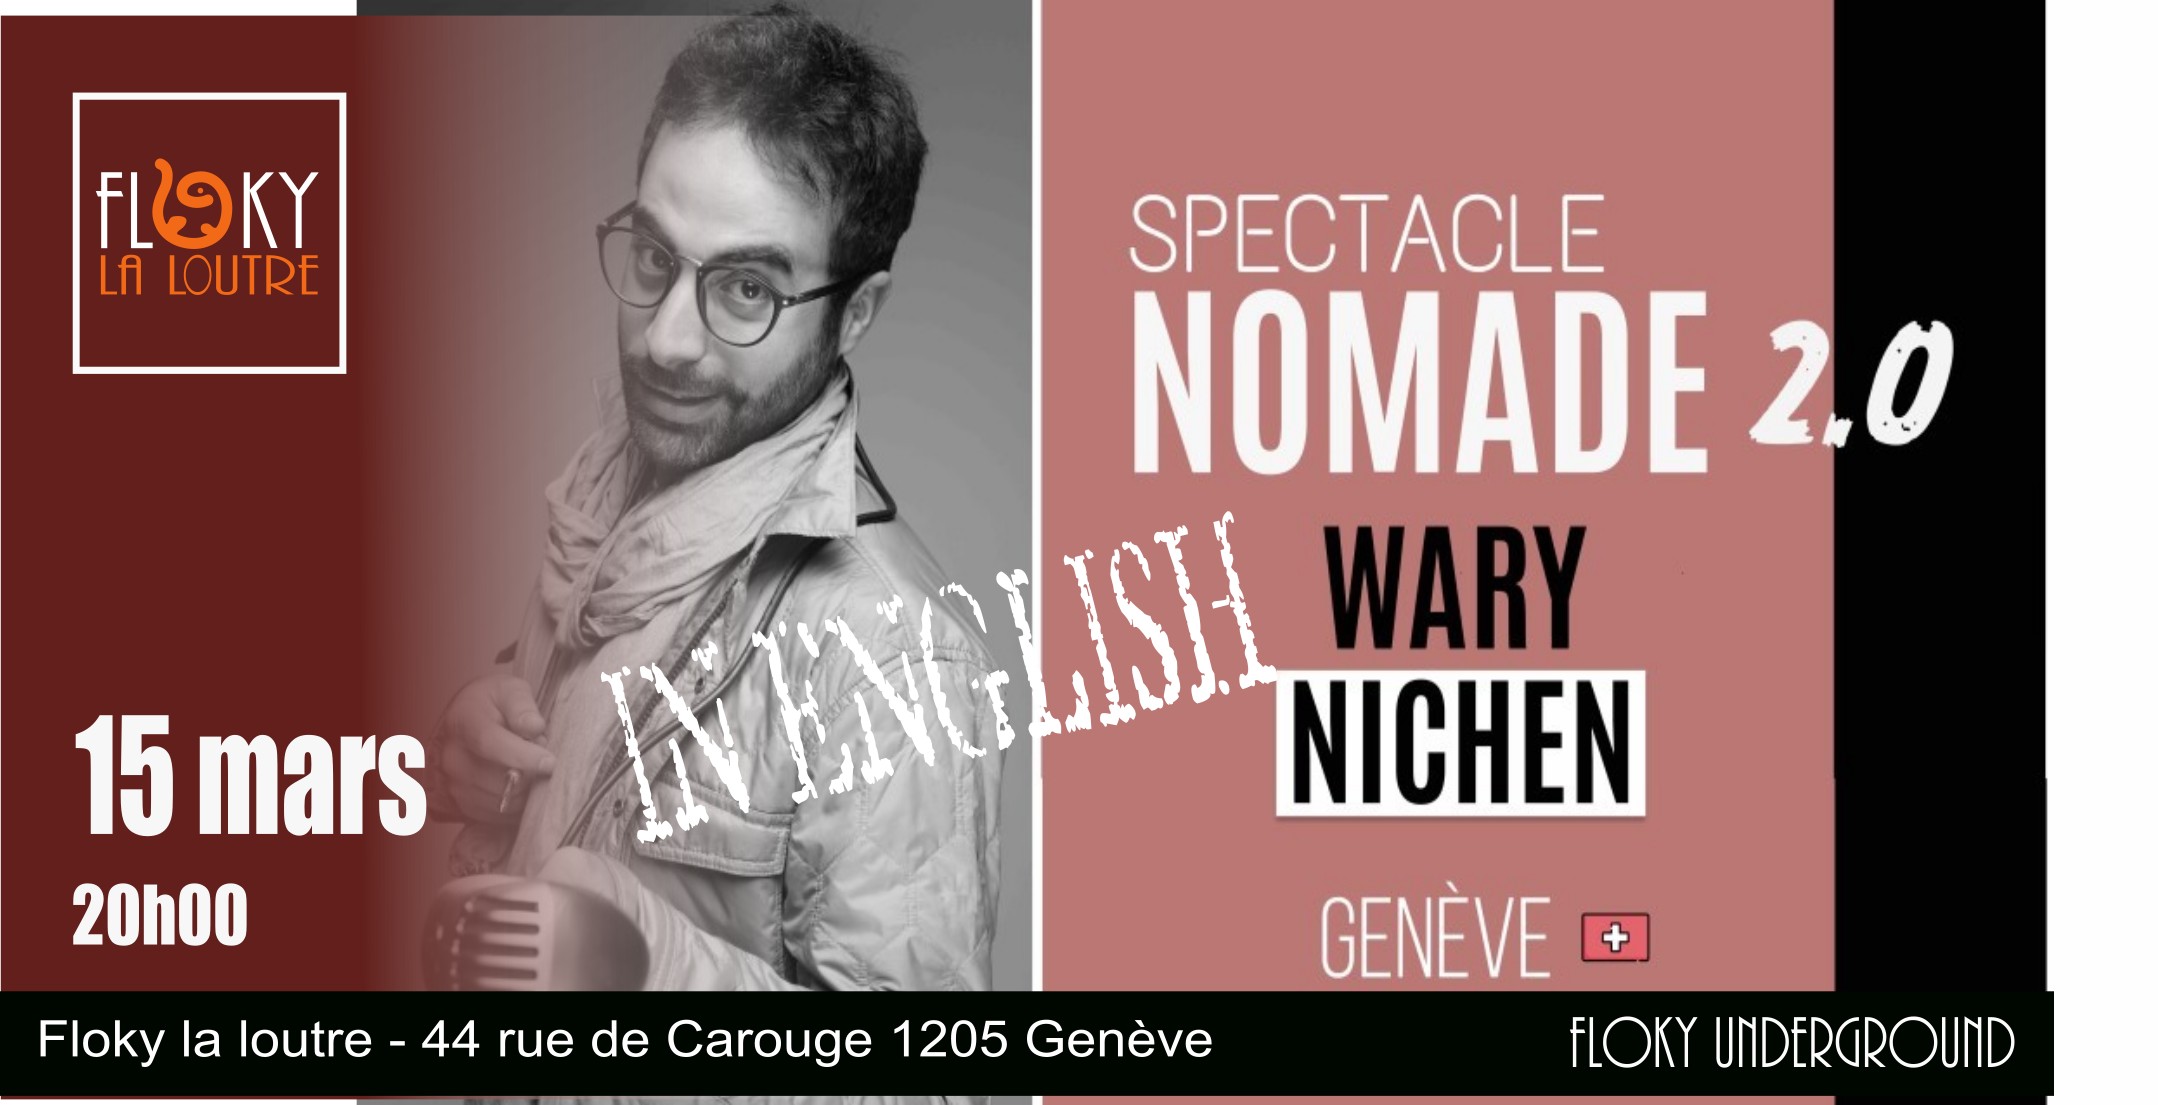 Nomade 2.0 – One Man Show – Wary Nichen